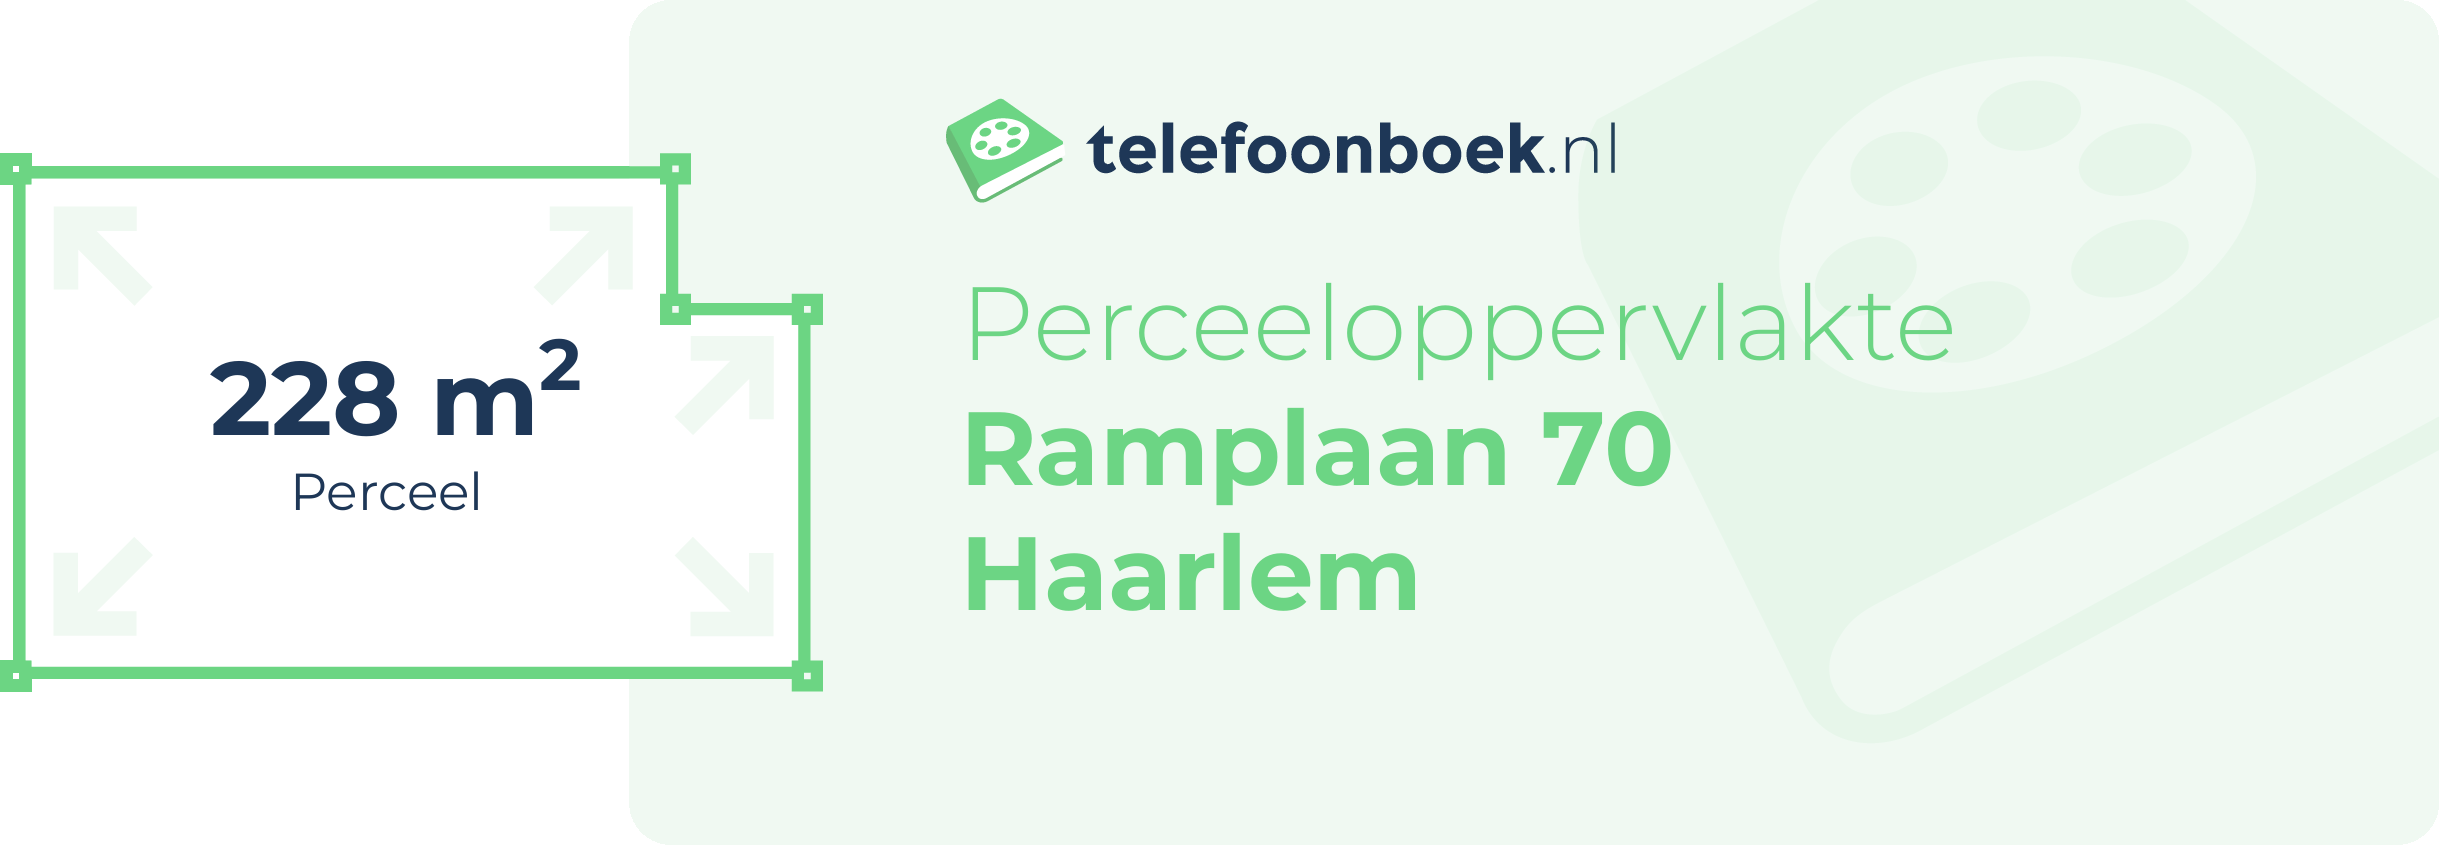 Perceeloppervlakte Ramplaan 70 Haarlem